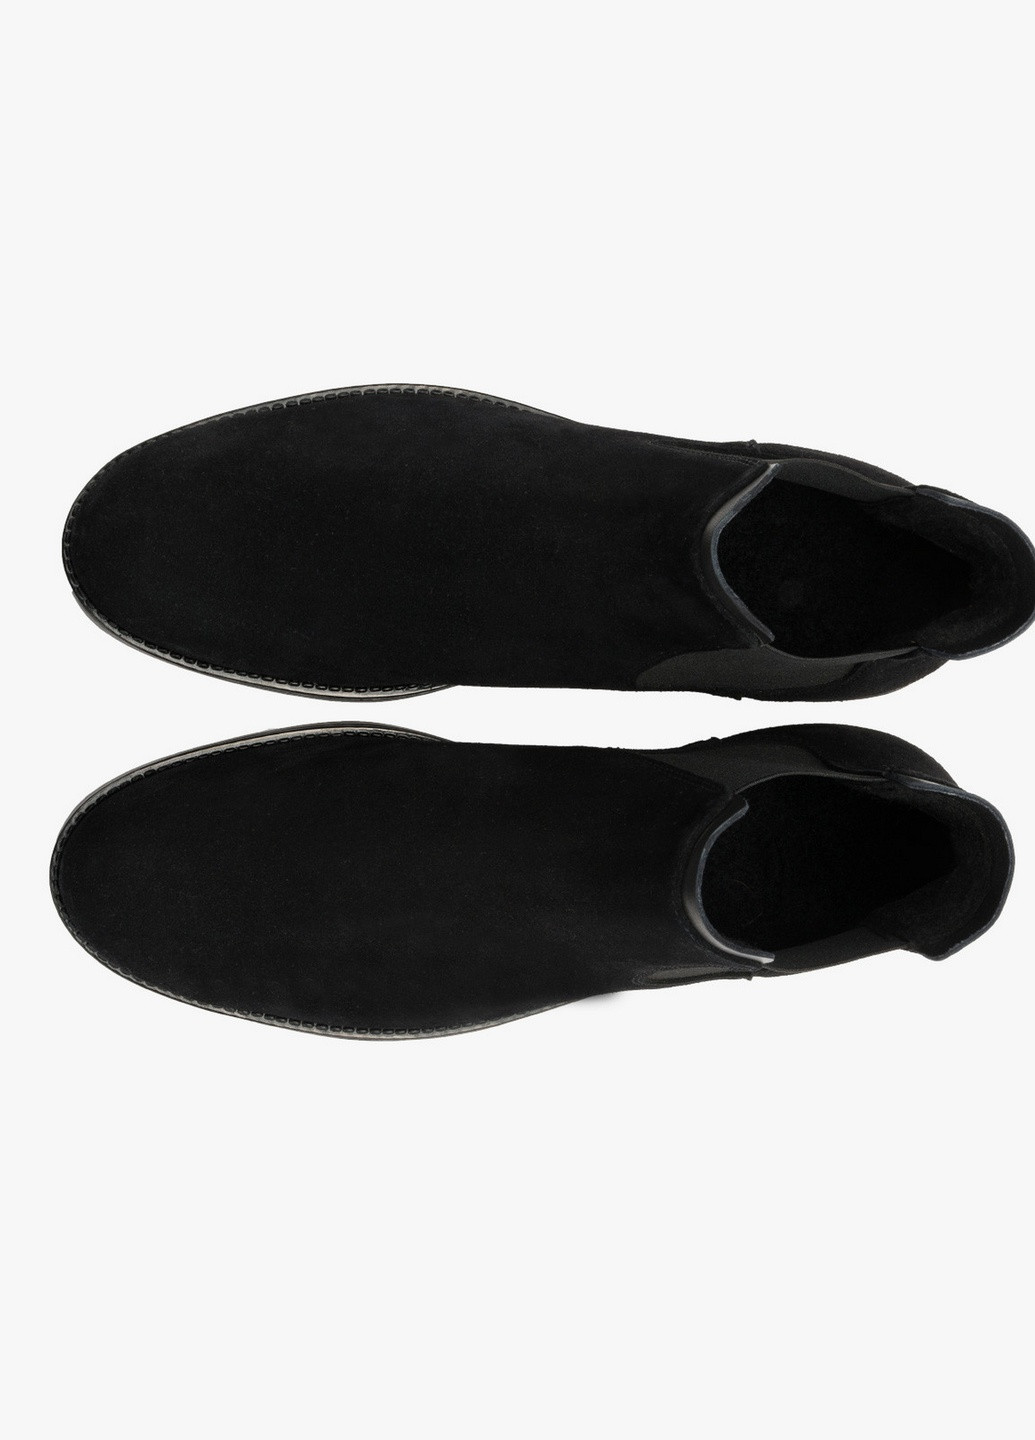 Черные осенние ботинки челси Rylko